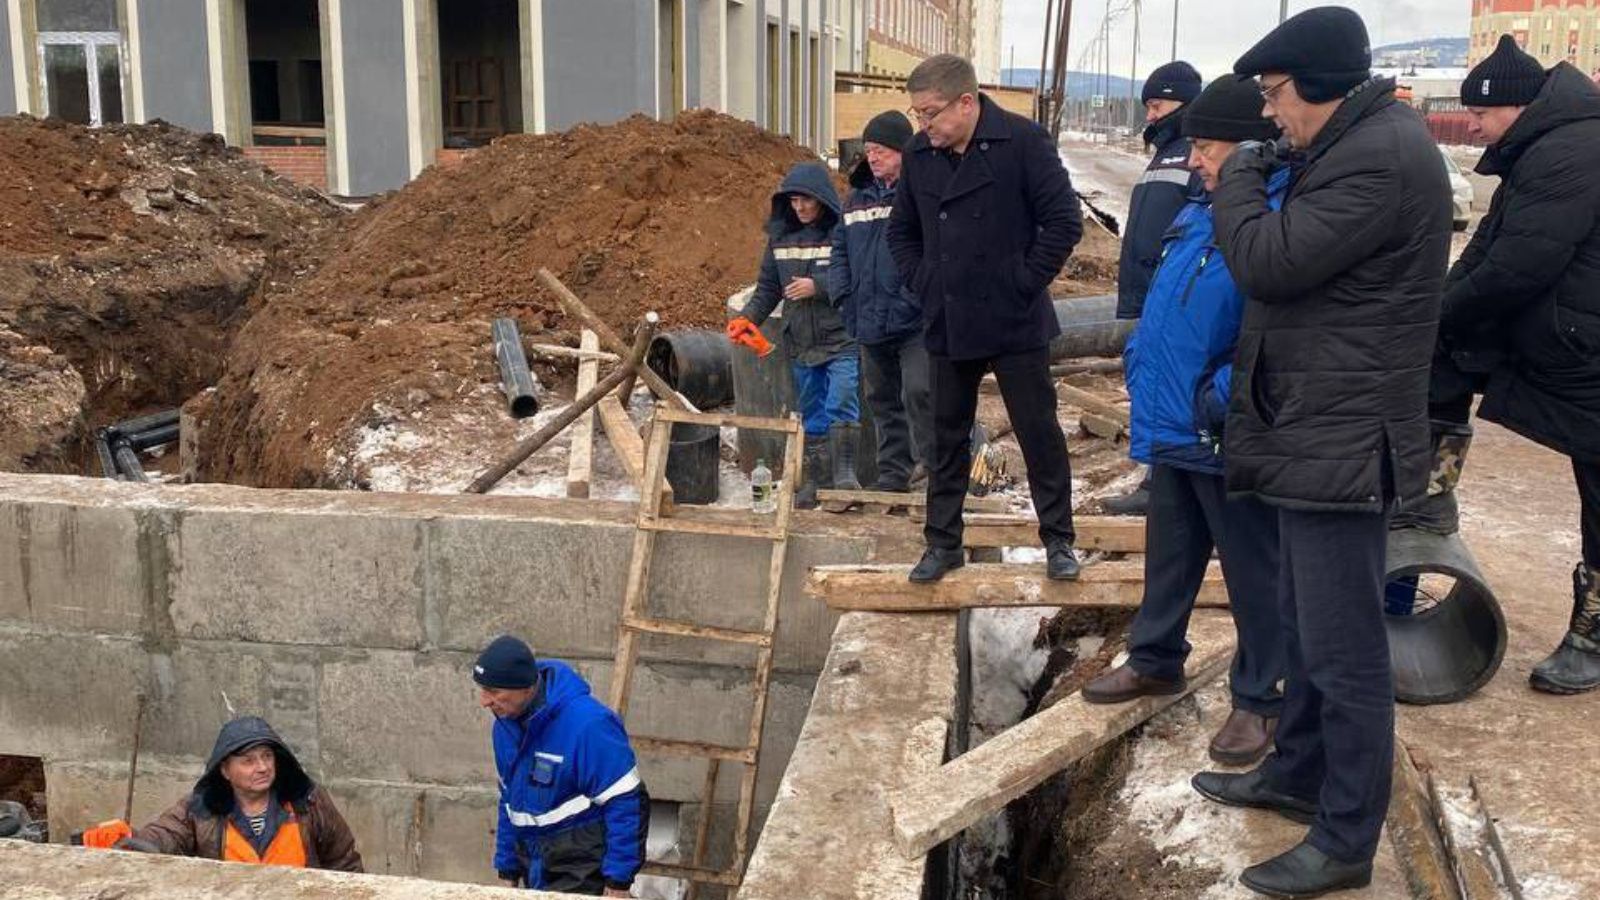 Глава района Тимур Нагуманов дал поручение в кратчайшие сроки устранить аварийную ситуацию в районе «Западные ворота»